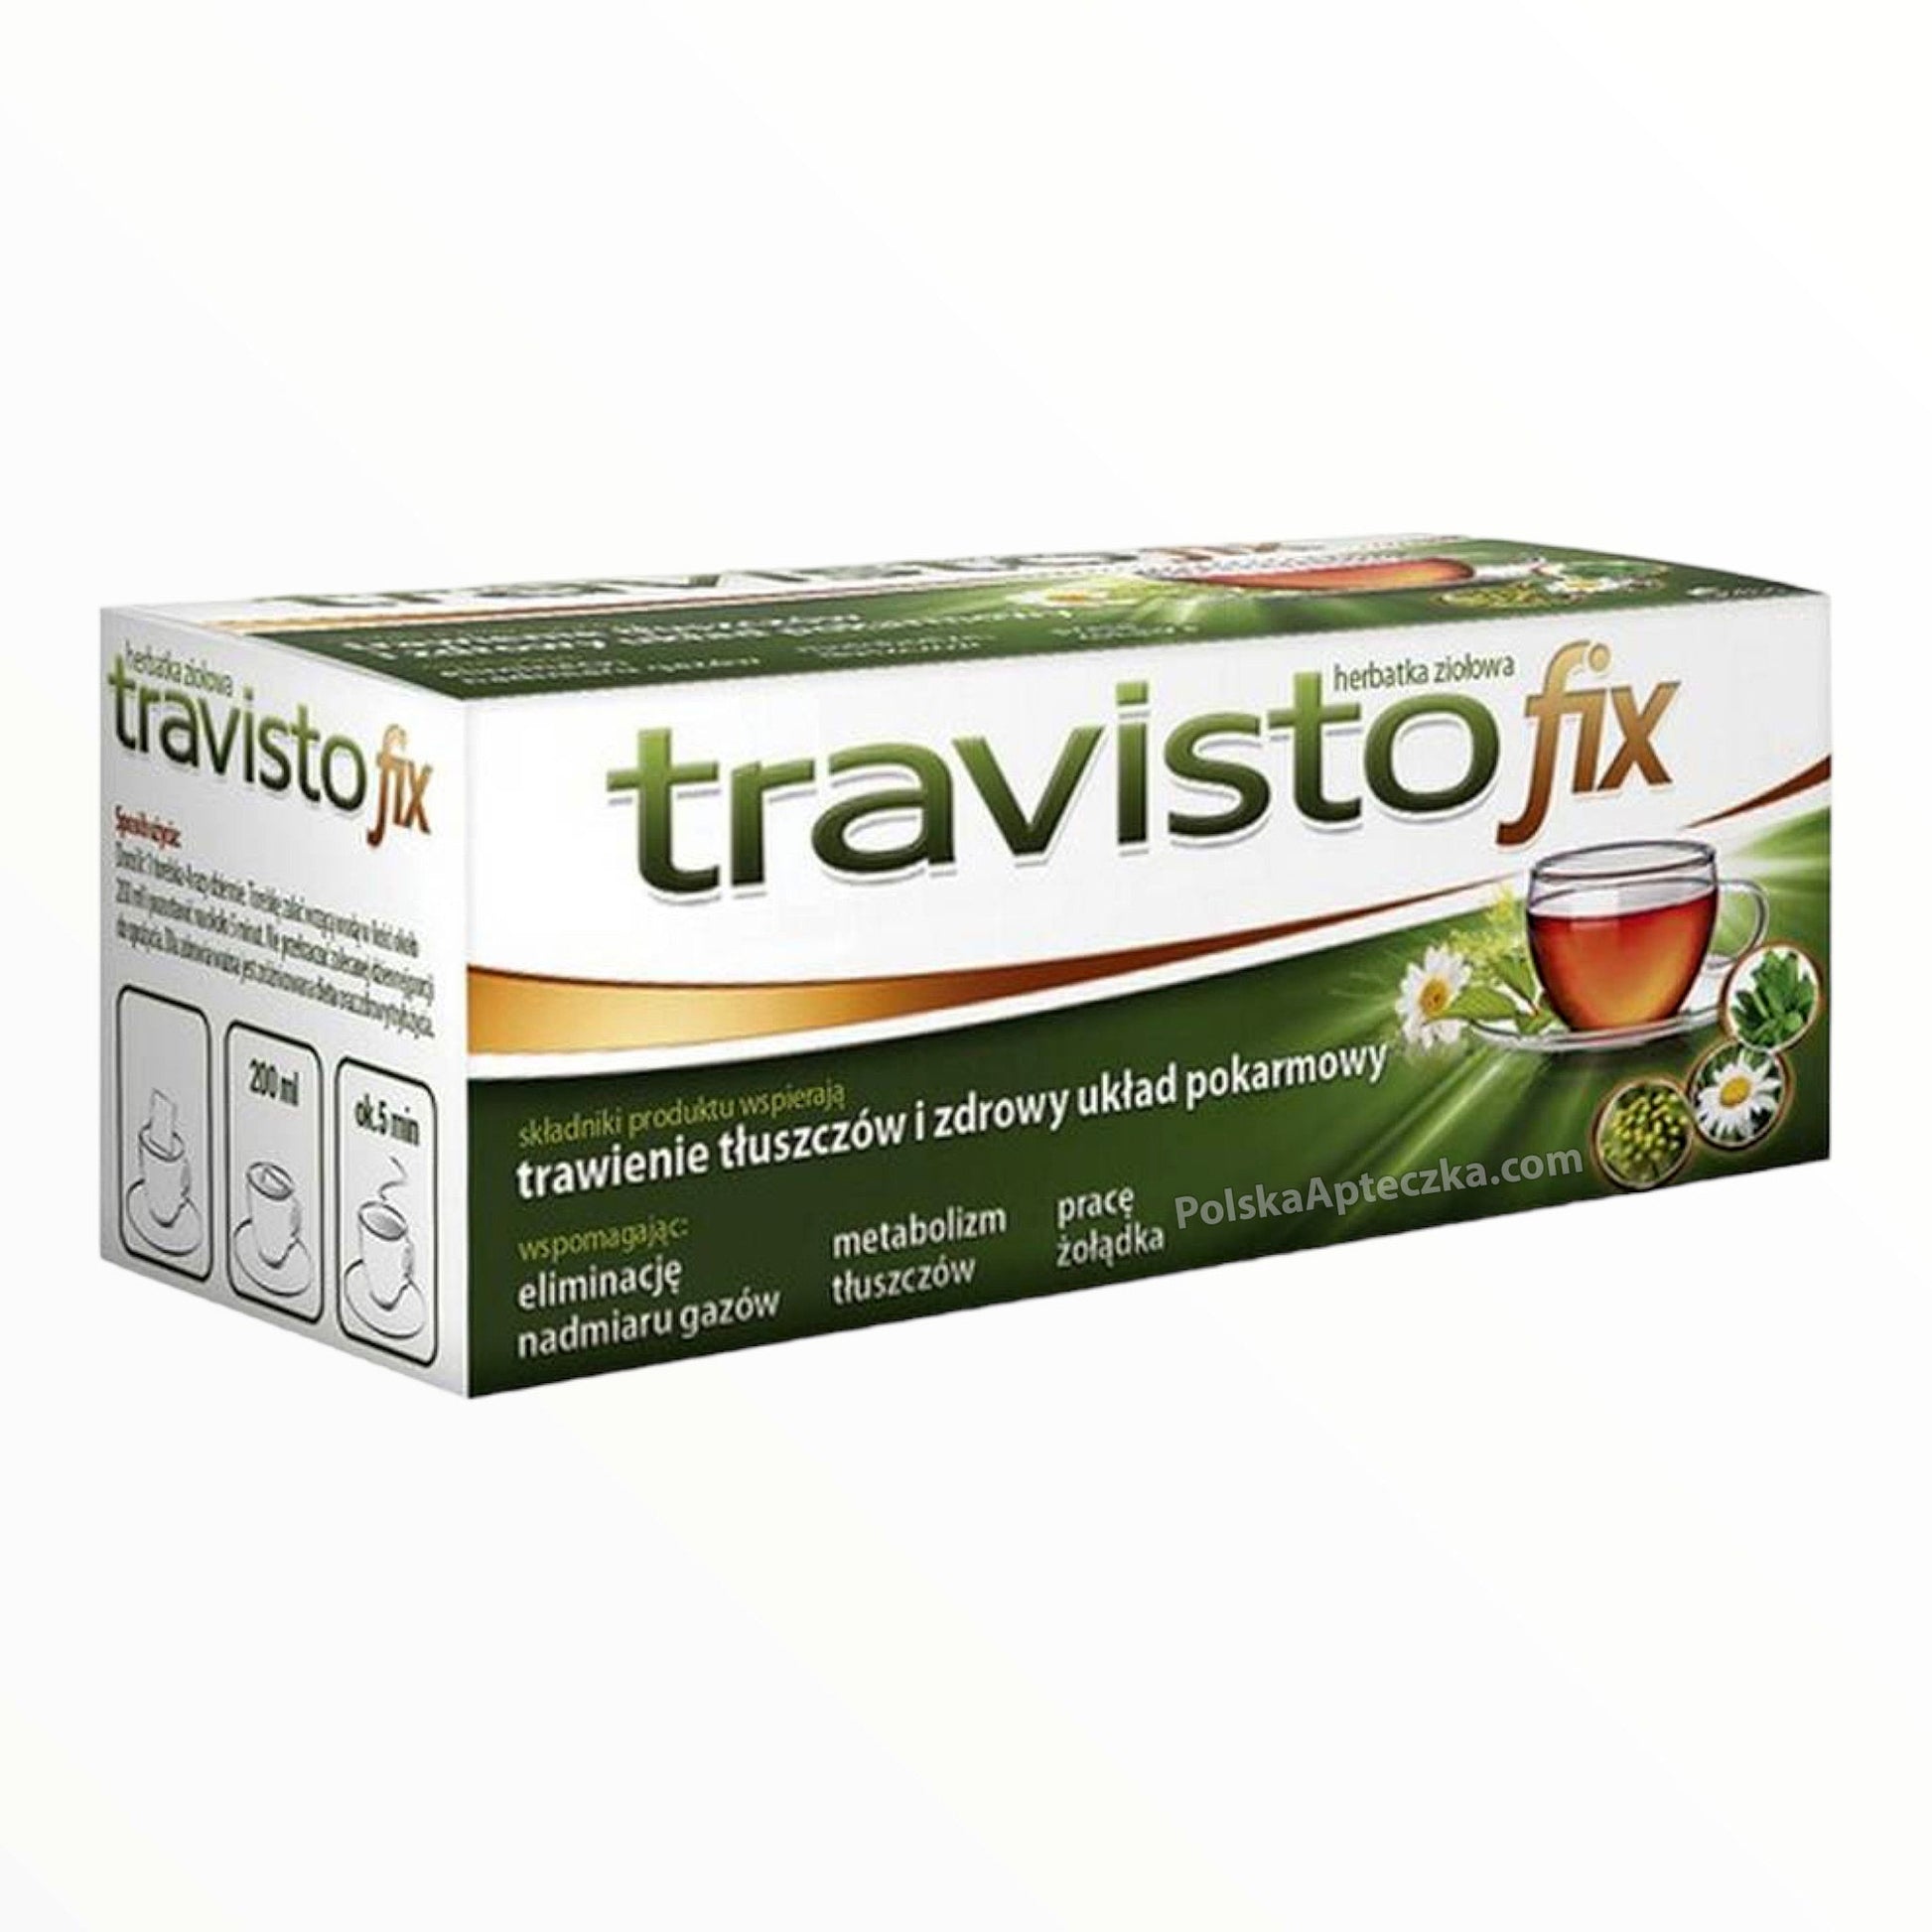 Travisto fix herbal tea 20 sachetes